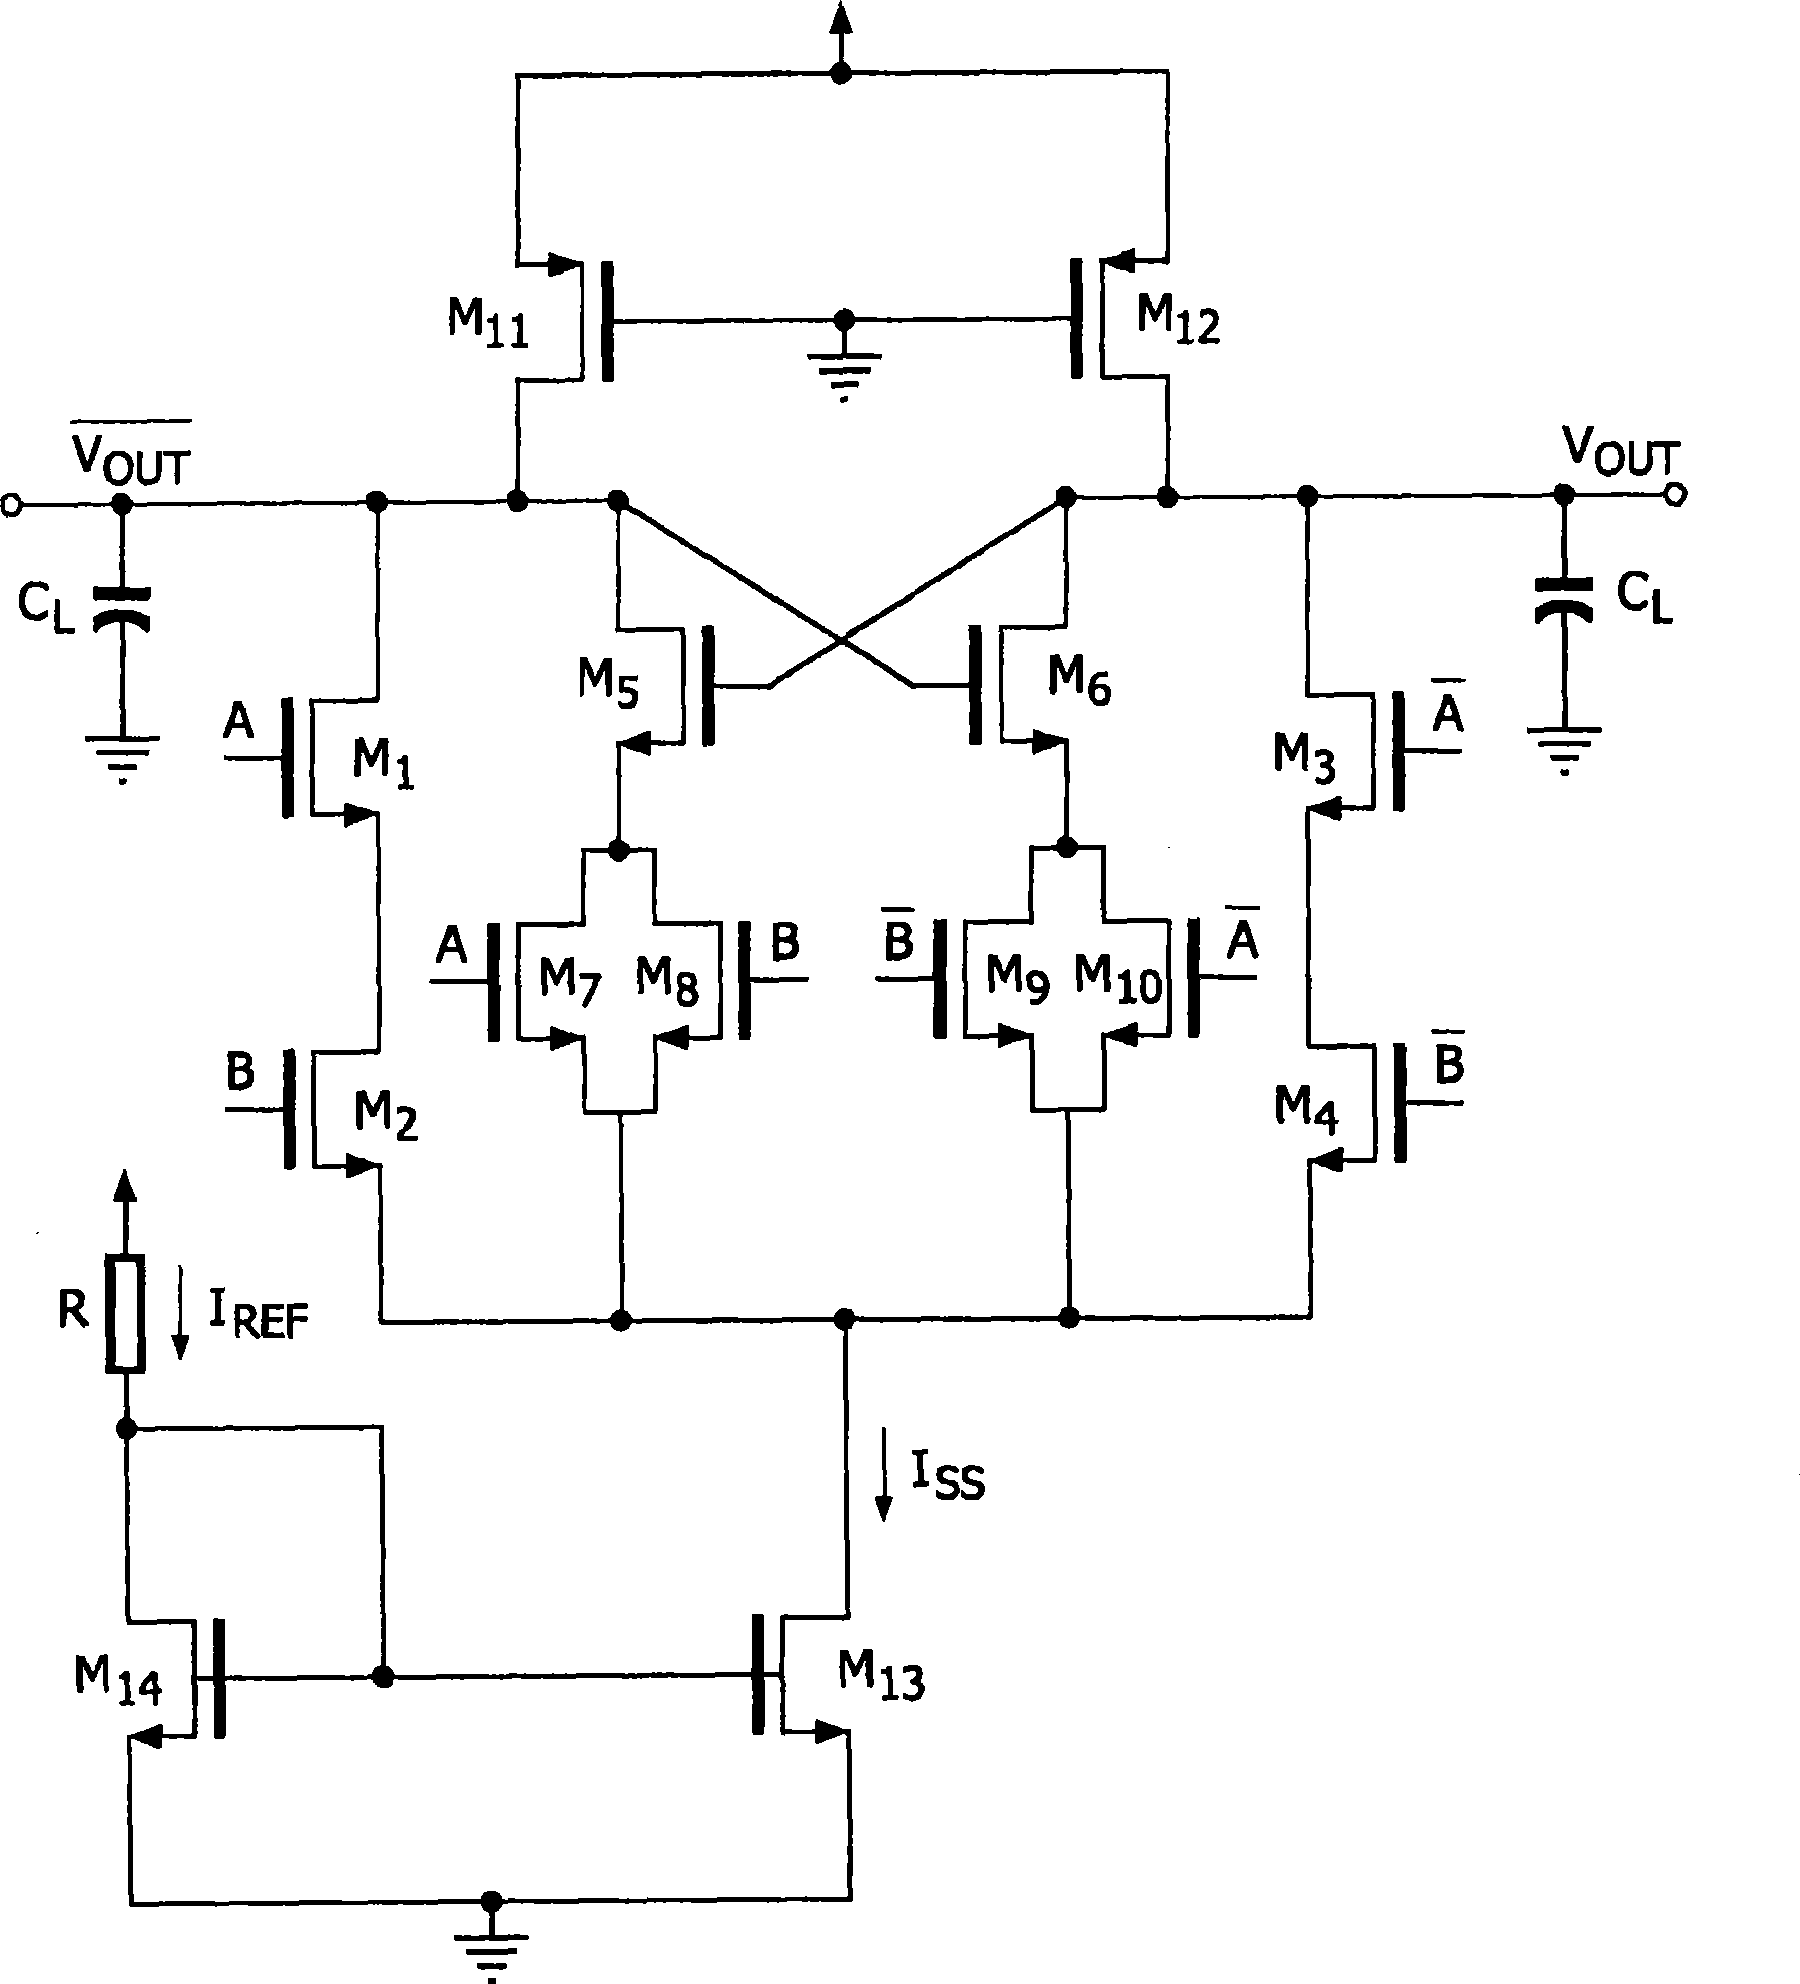 Muller-c element